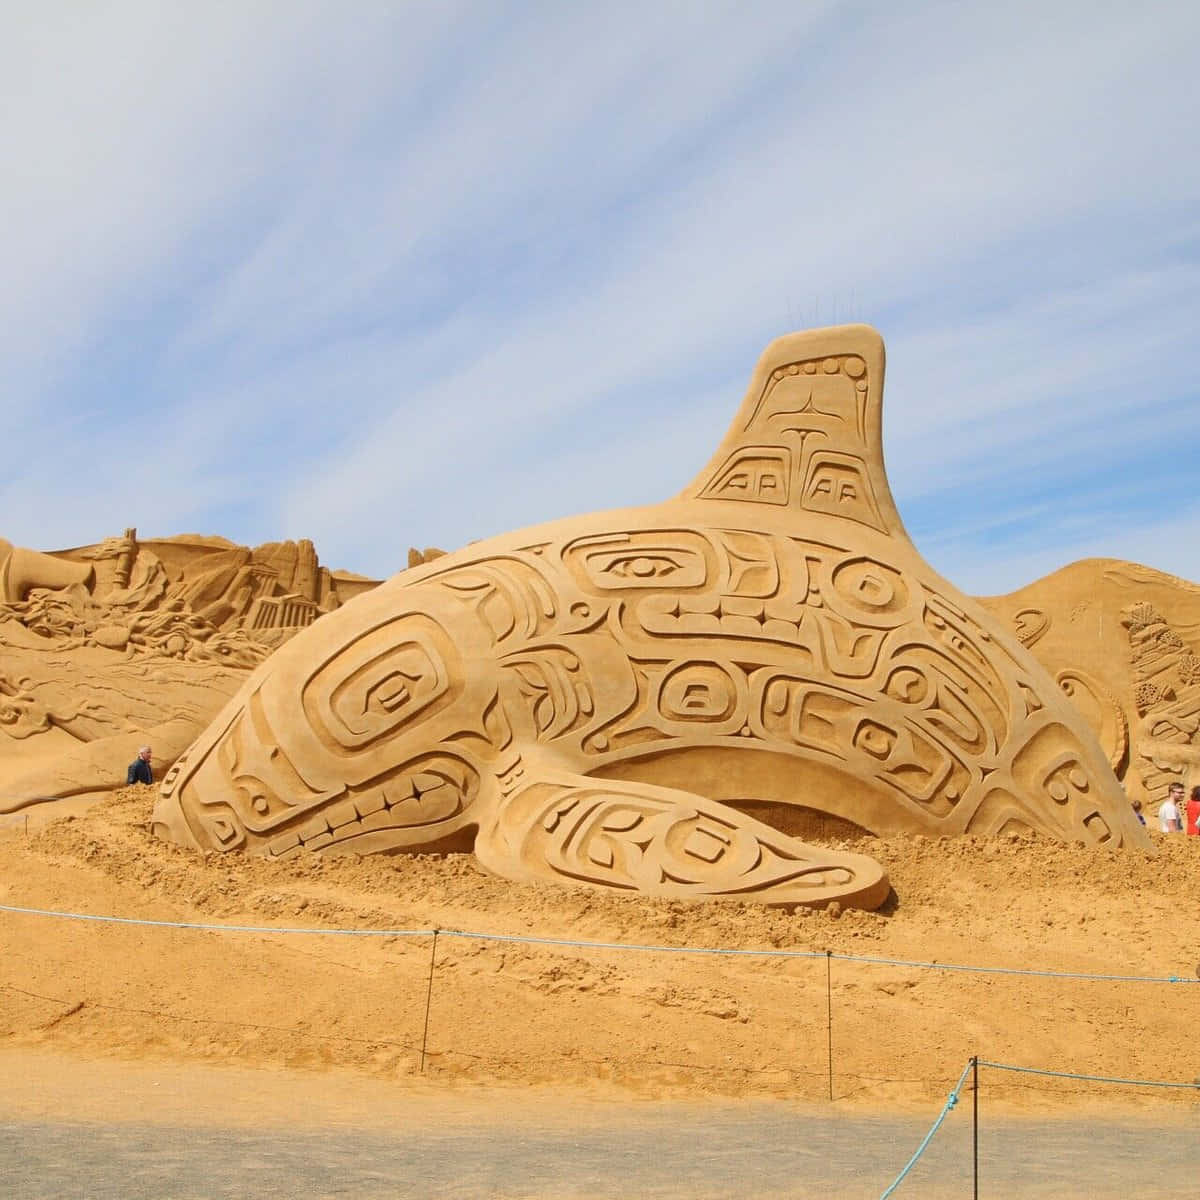 "Creative Sand Art Sculpture"